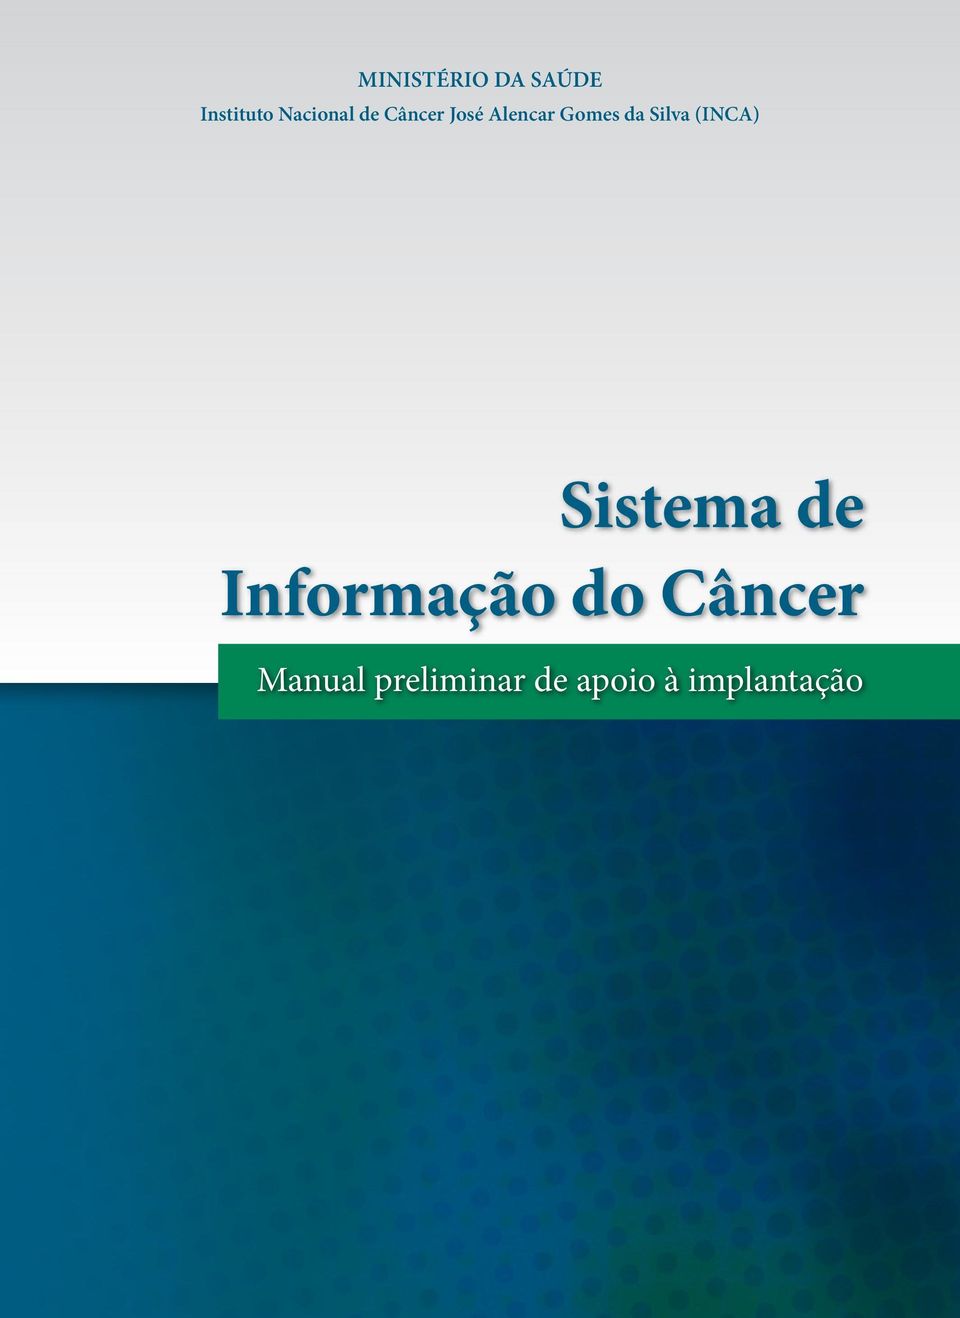 (INCA) Sistema de Informação do Câncer